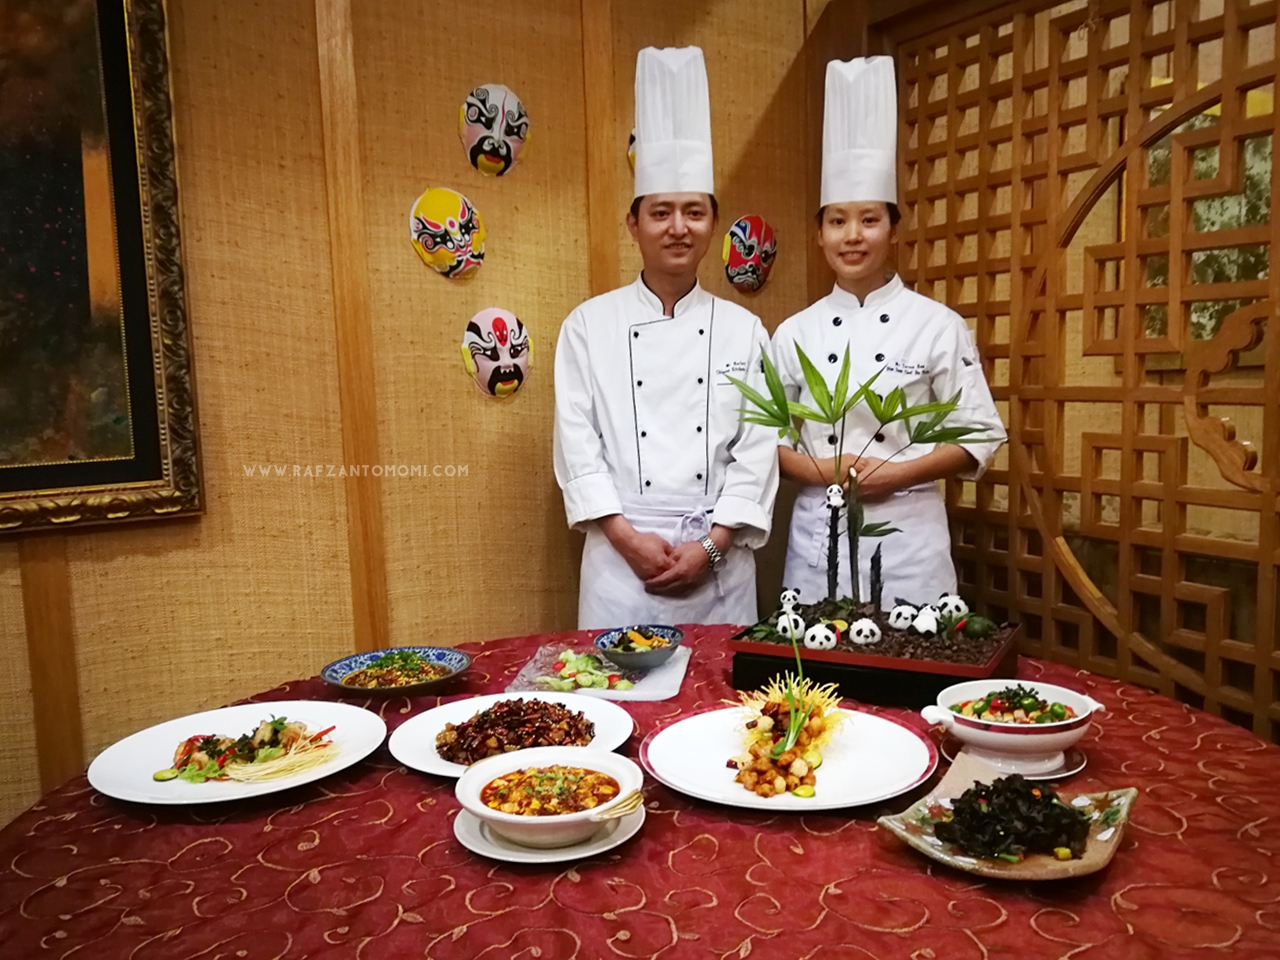 Sichuan 2018 Food Fiesta Di Hotel Dorsett Terpilih Bermula 4 Ogos Hingga 29 Ogos 2018